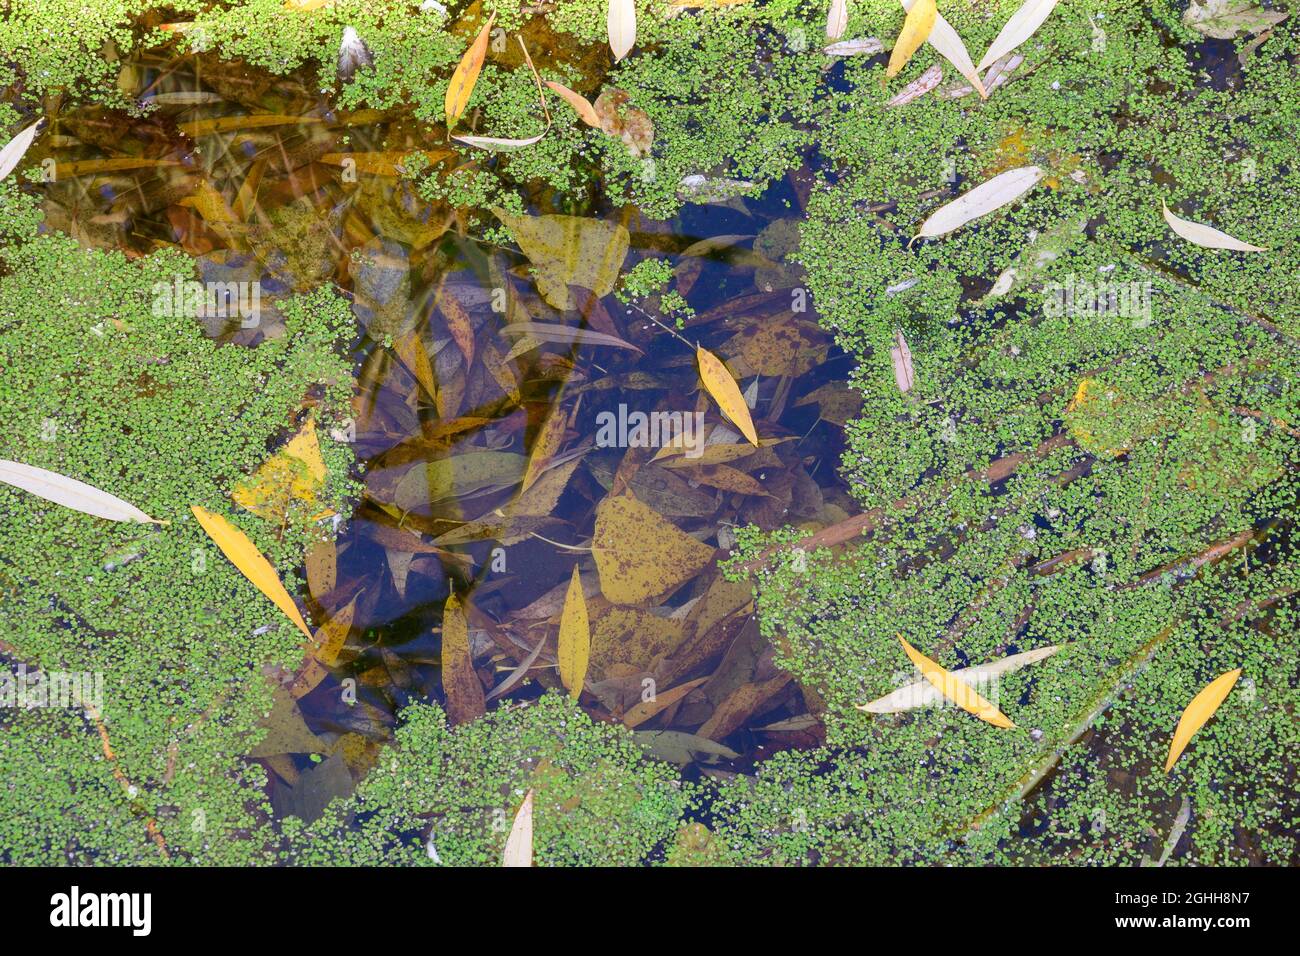 Green tina sur un marais par une journée ensoleillée. Une couche de tina, de duckweed à la surface du lac avec des feuilles d'automne. Banque D'Images